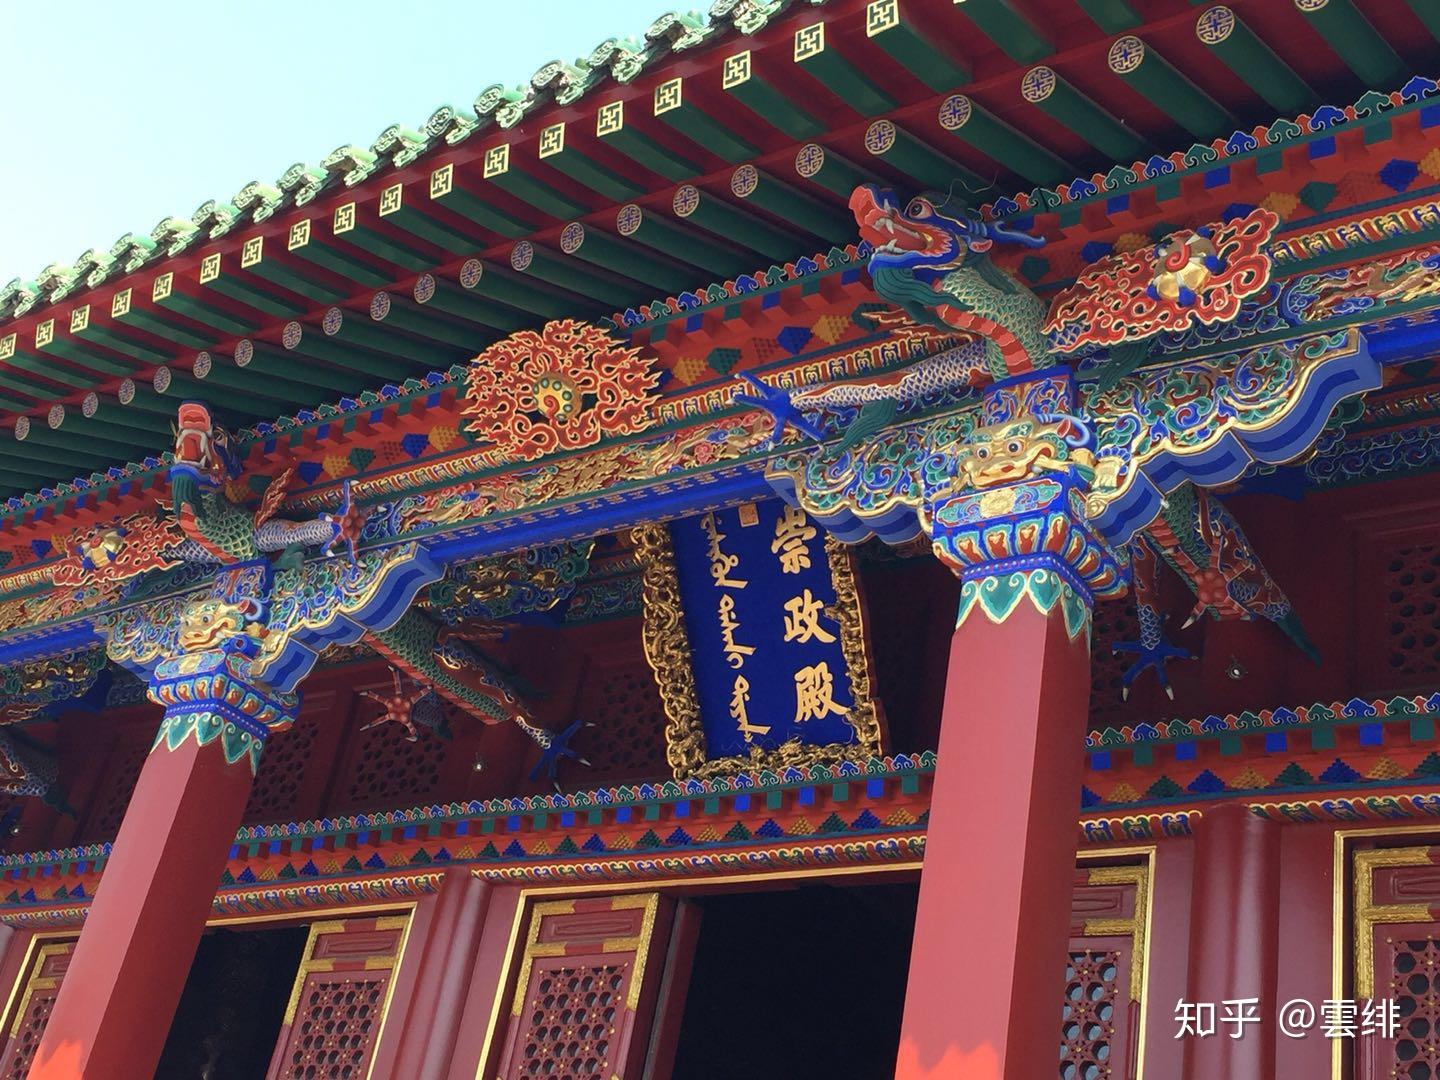 「沈阳故宫」是一个什么景点，有什么吸引人的地方和历史典故？ - 知乎